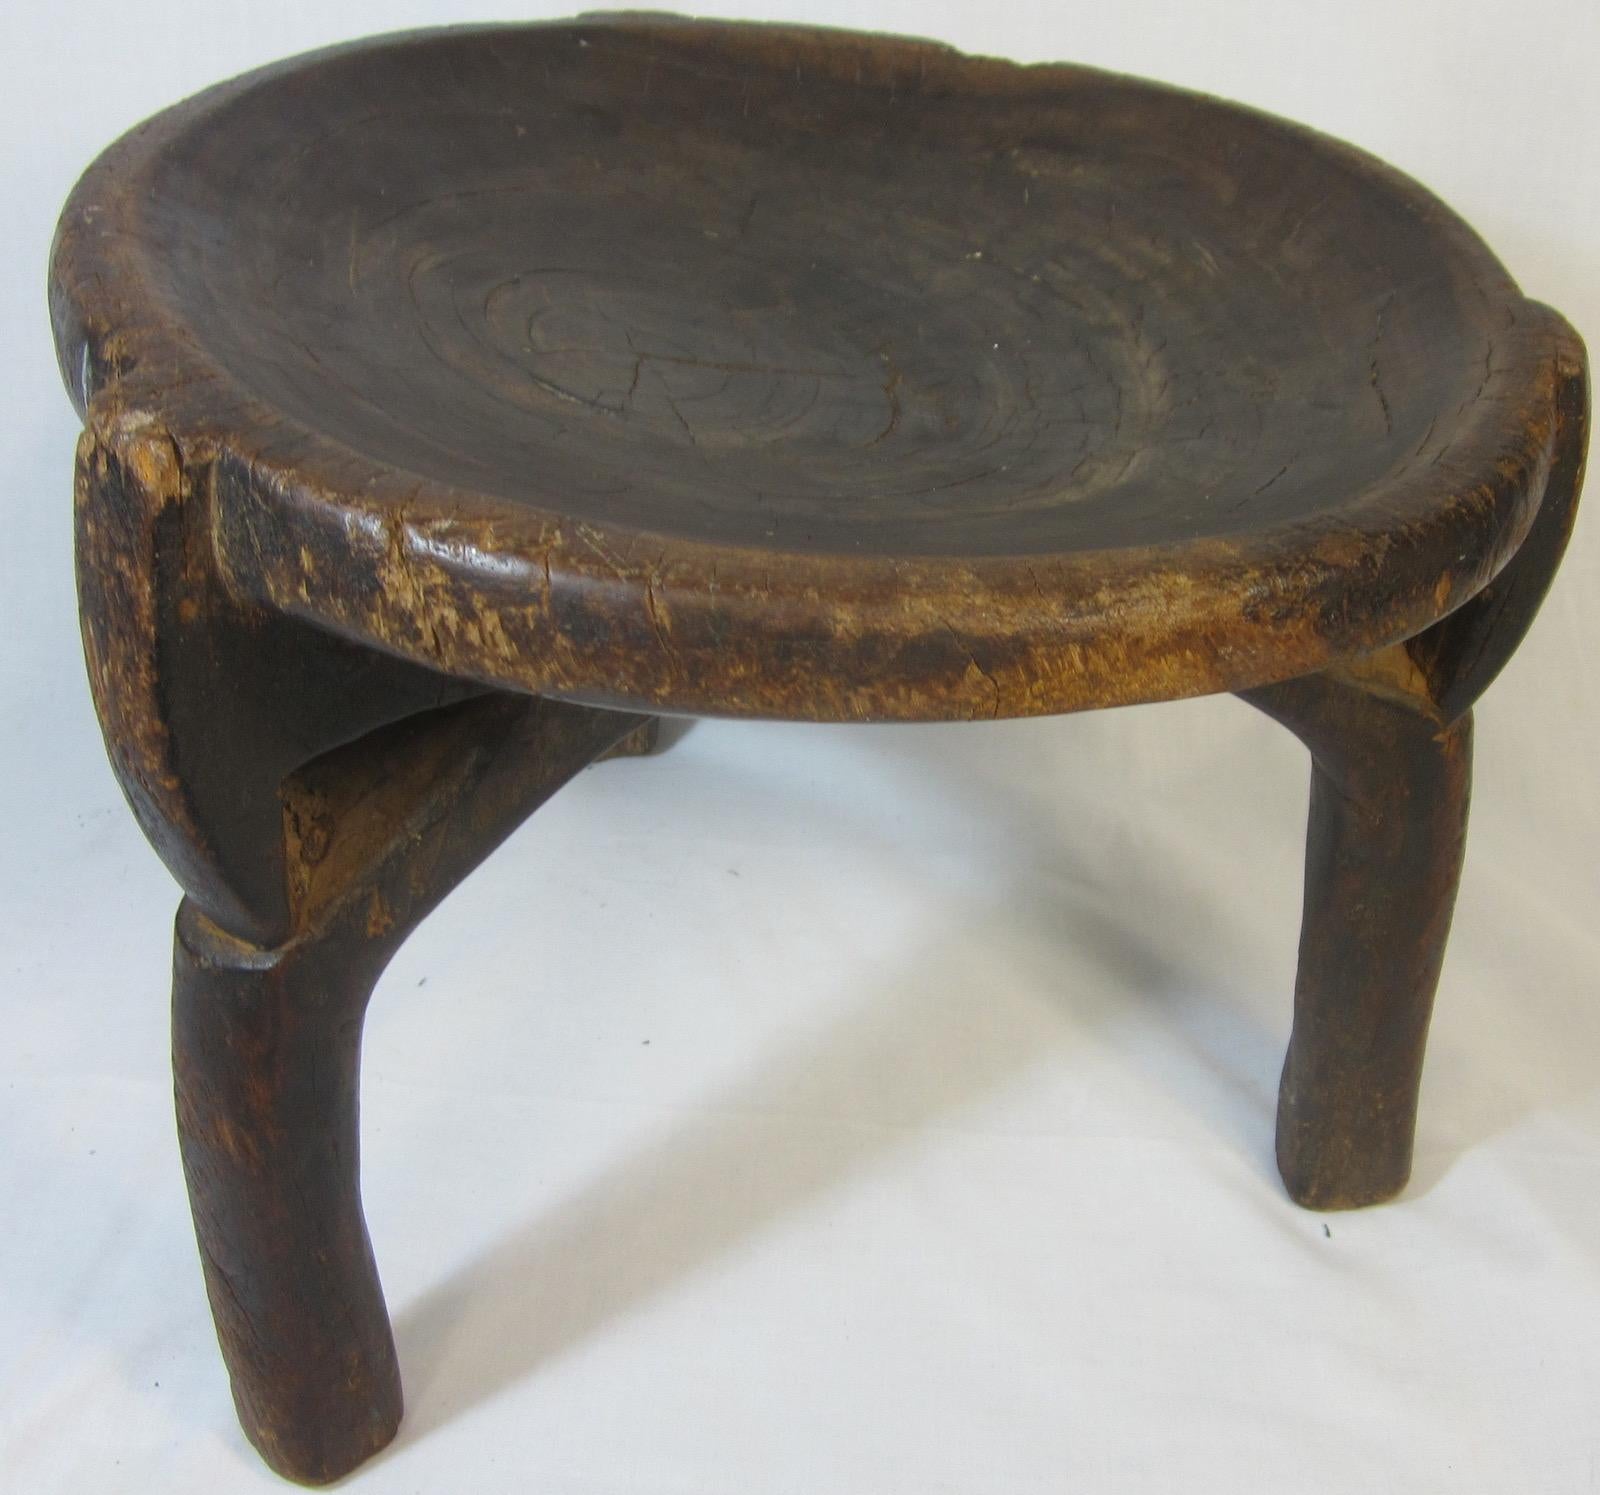 Early 20th Century Tanzanian HEHE stool